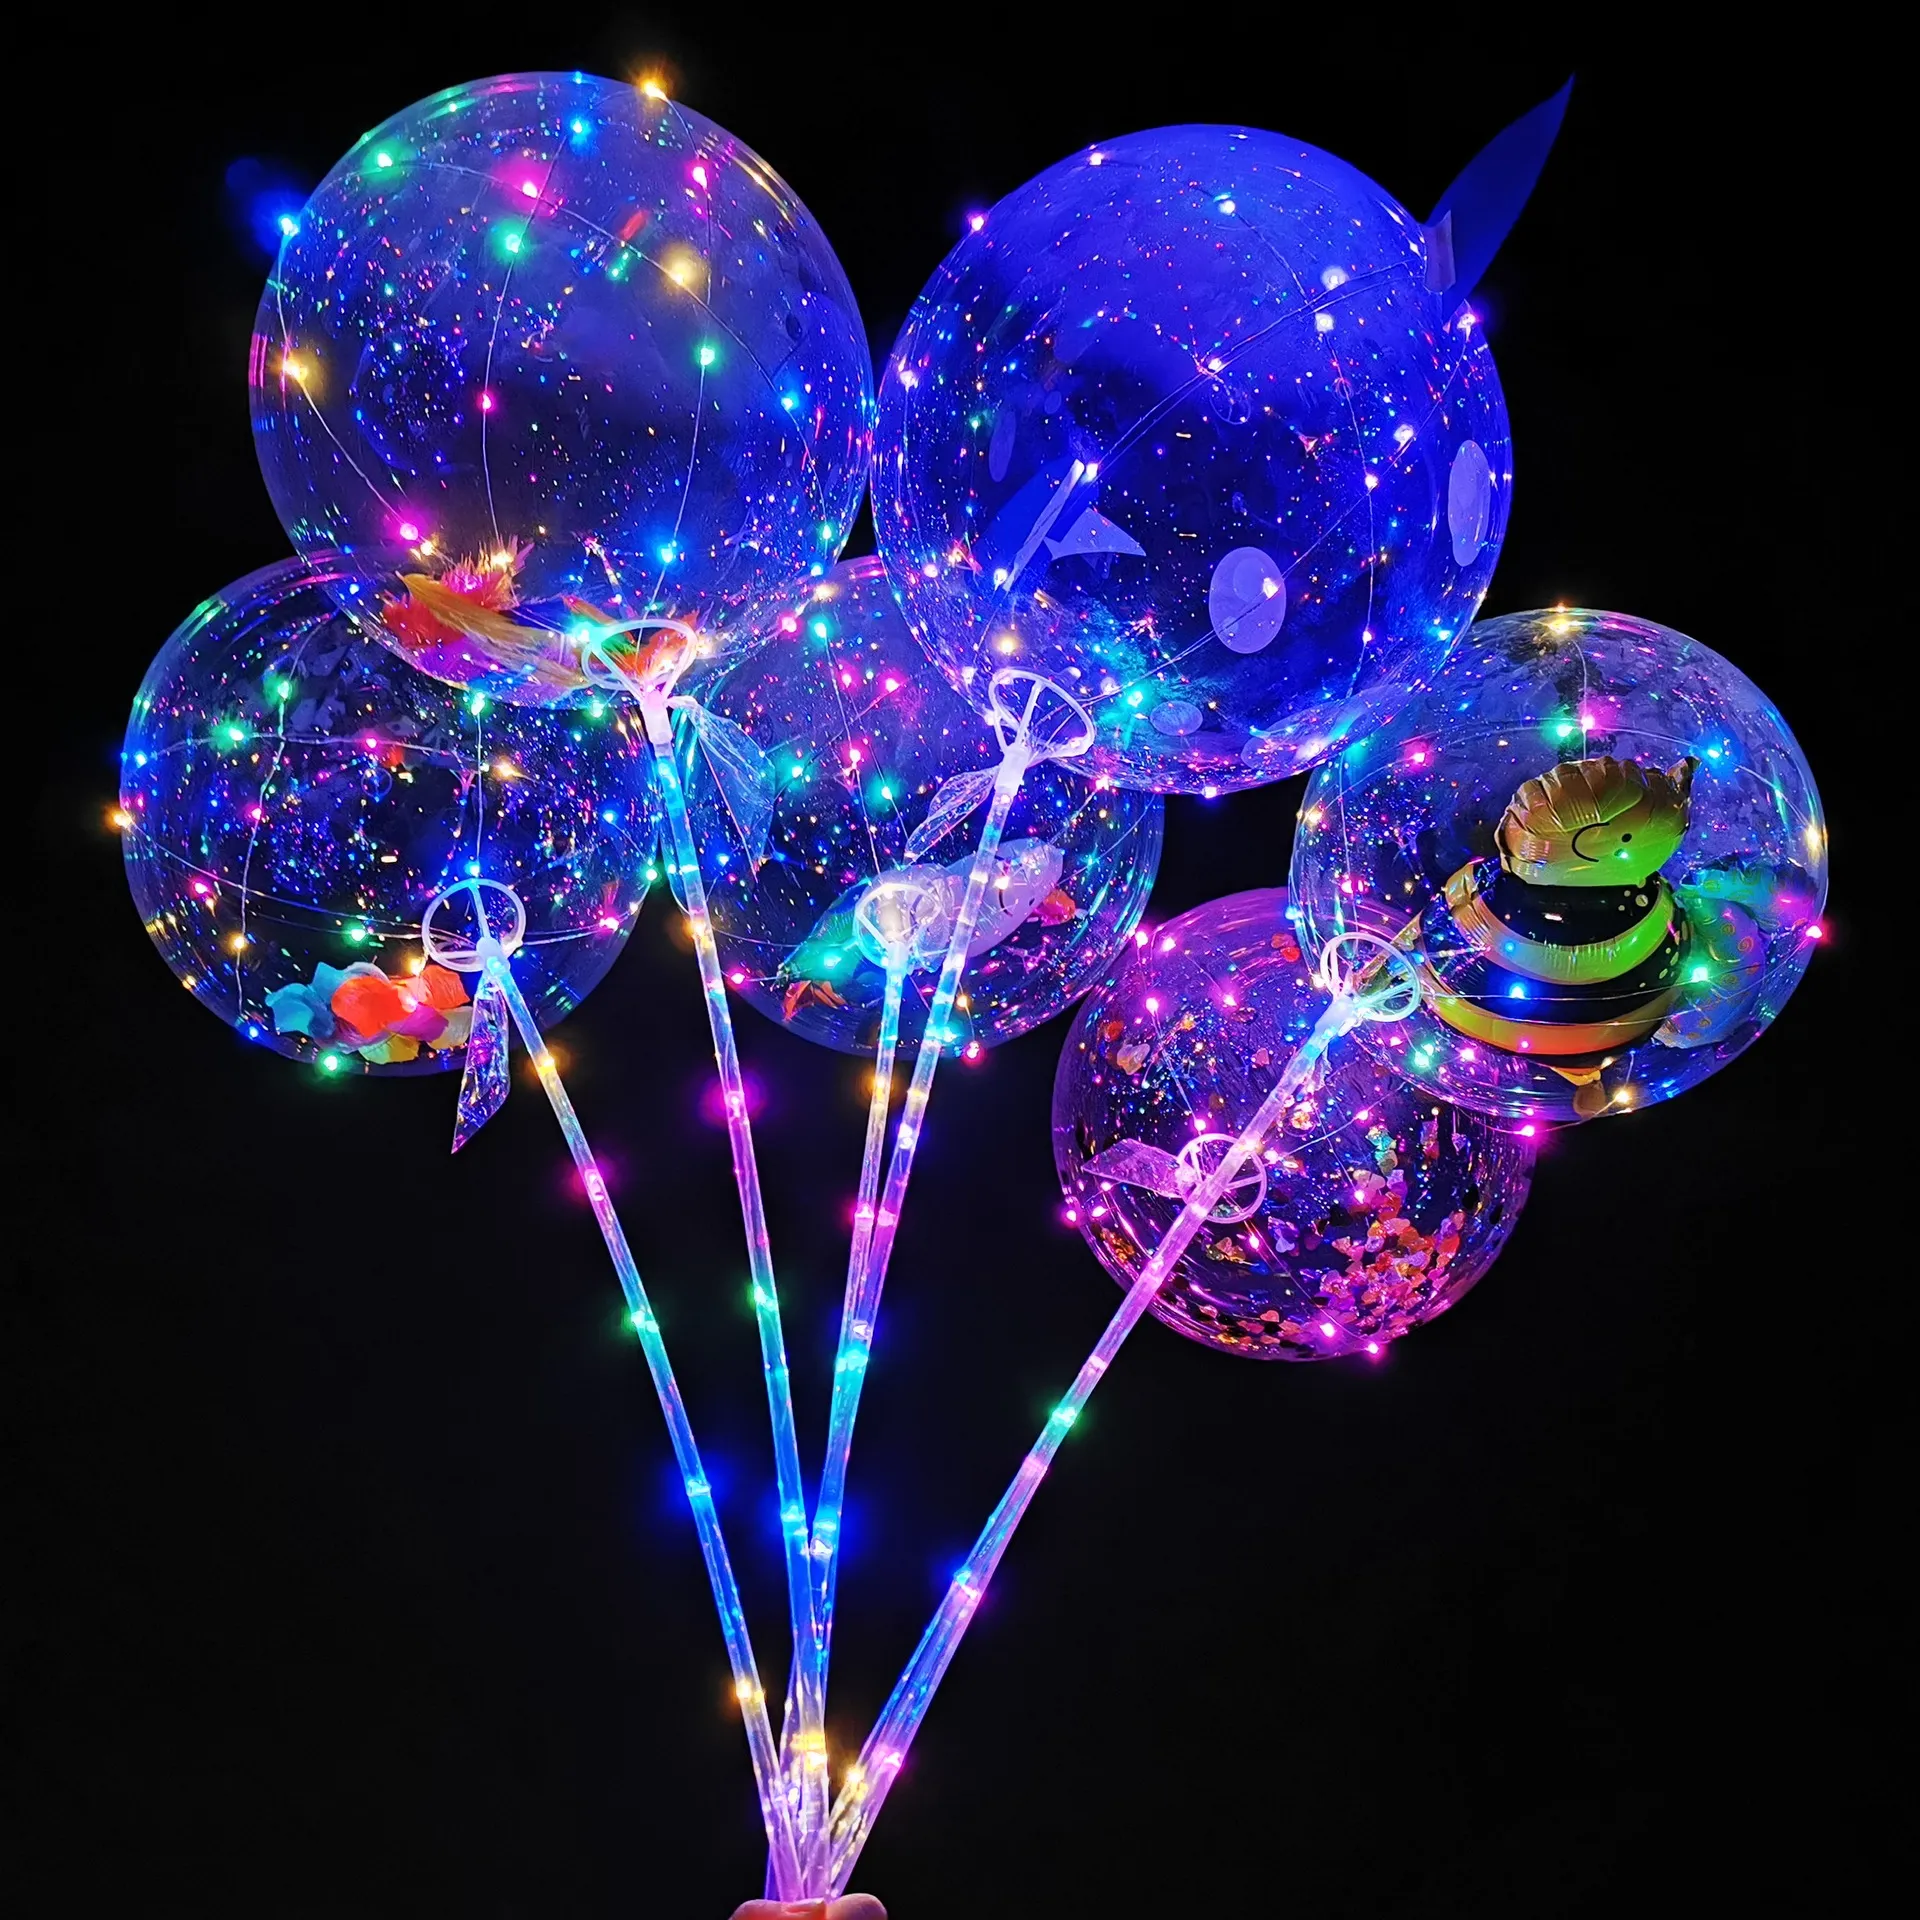 DIY multicolore couleur Led ballons nouveauté éclairage Bobo Ball mariage ballon soutien toile de fond décorations lumière ballon mariages nuit fête fournitures ami cadeau